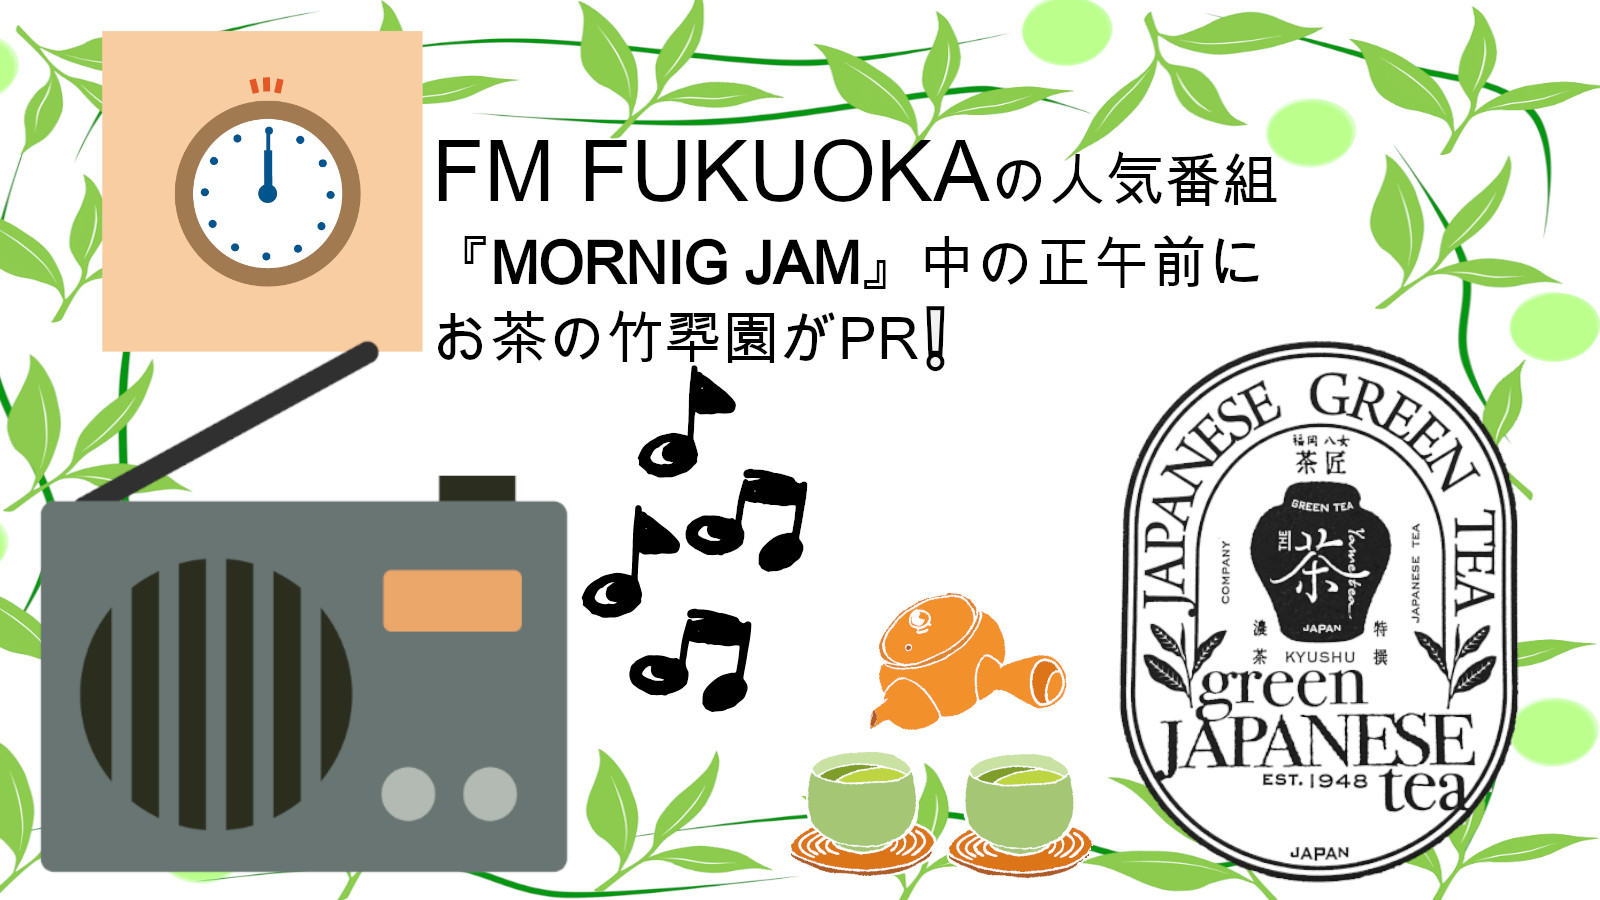 22年2月から地元九州のFM局のFM FUKUOKAさんにてCMが放送されます！